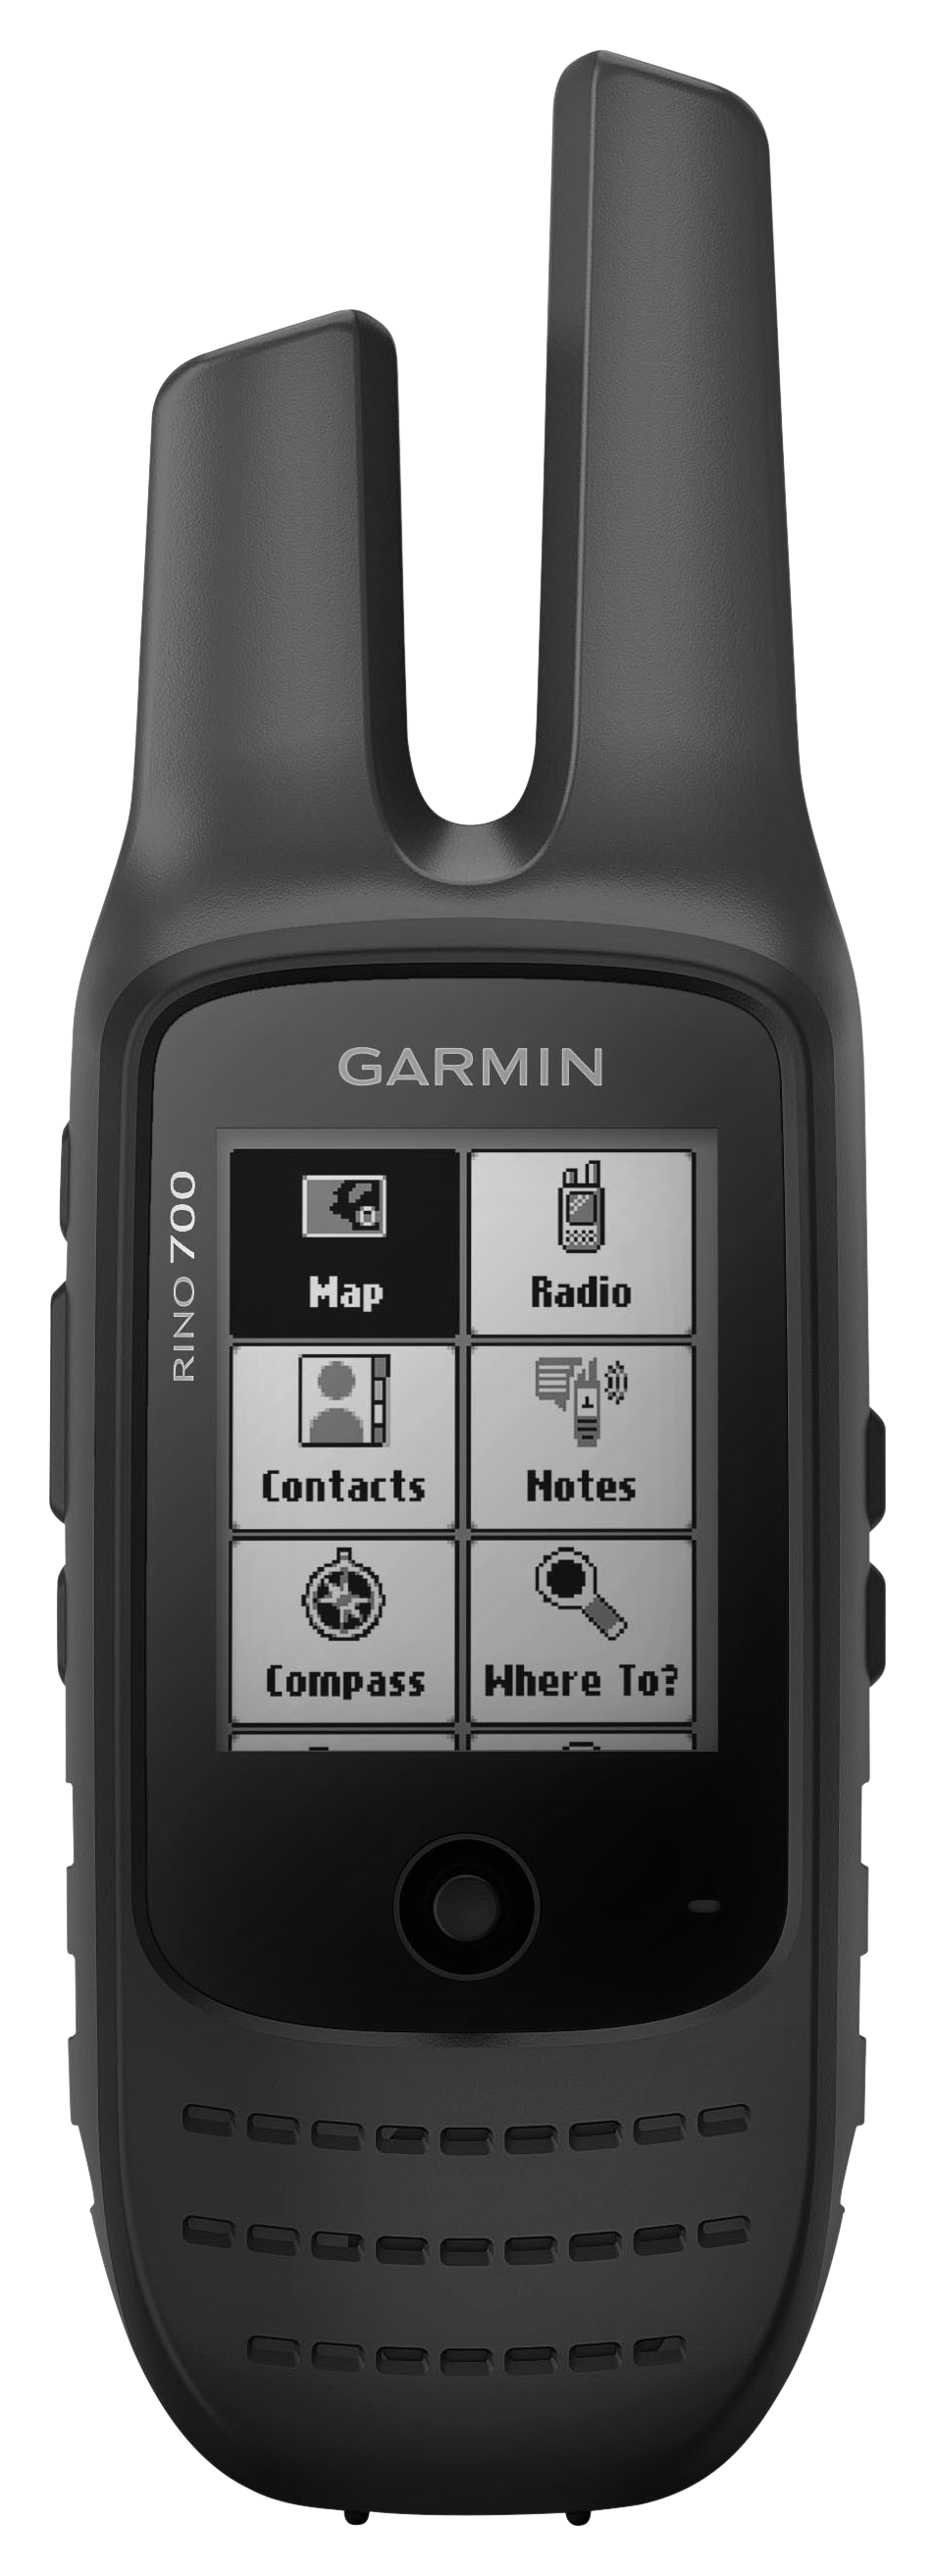 Garmin Rino 700 Handheld Two-Way Radio with GPS/GLONASS